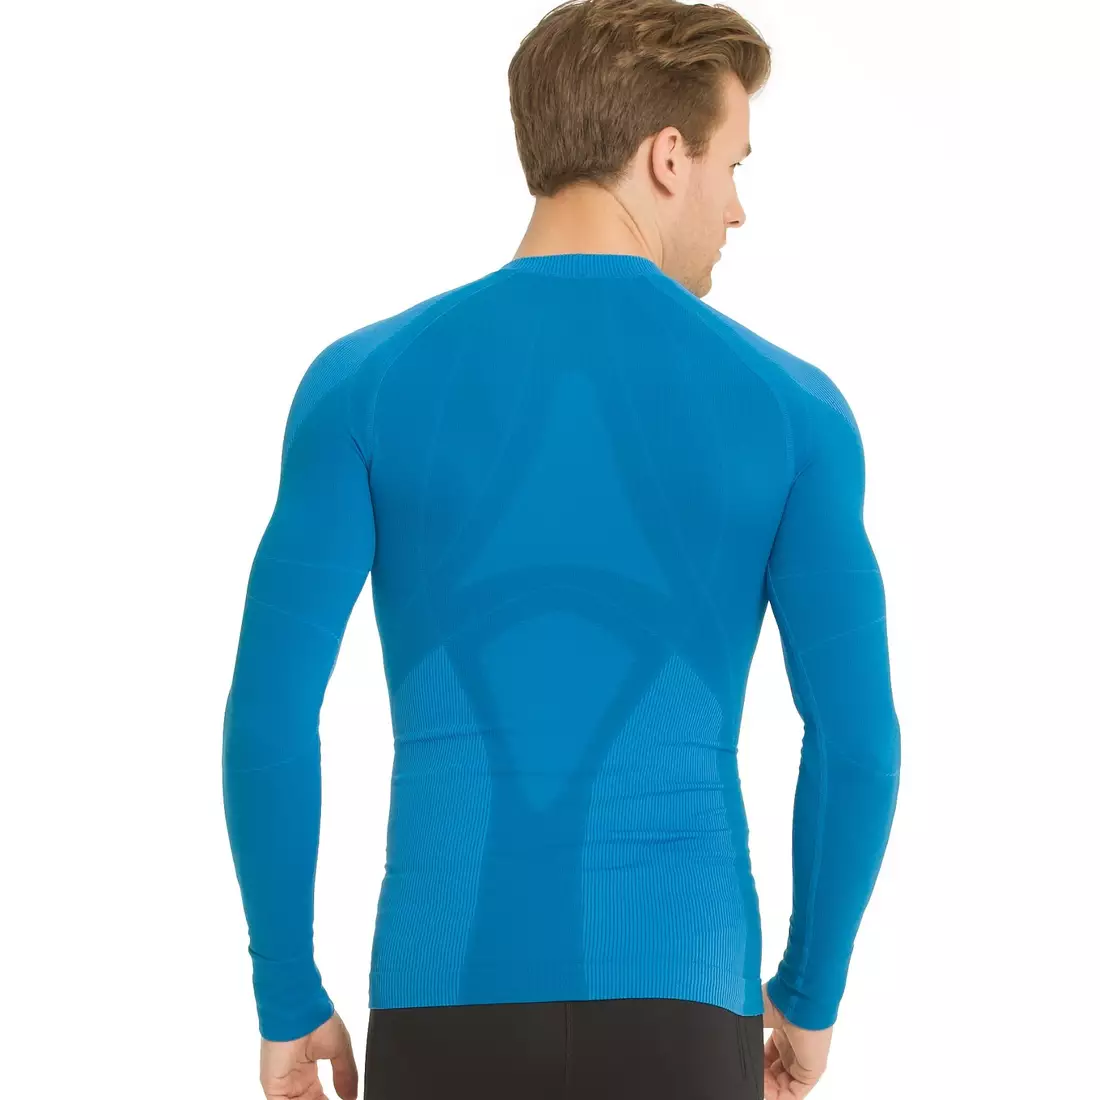 CRAFT WARM - thermal underwear - 1901637-2350 - men's T-shirt